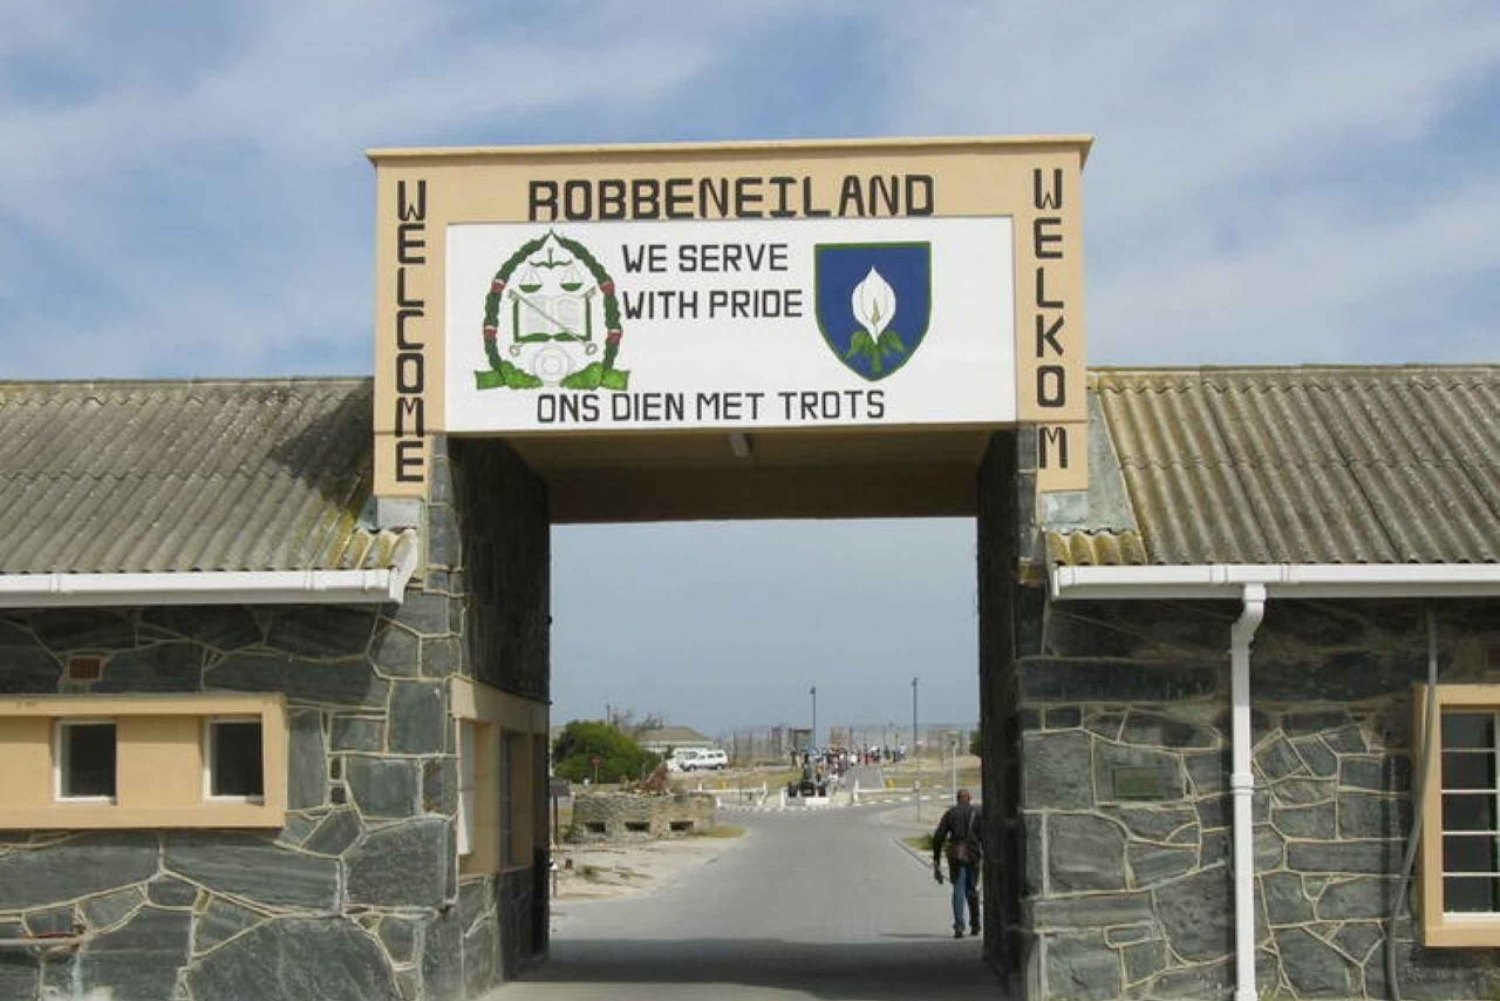 Tour dei punti salienti della città di Città del Capo: Robben Island e Table Mountain